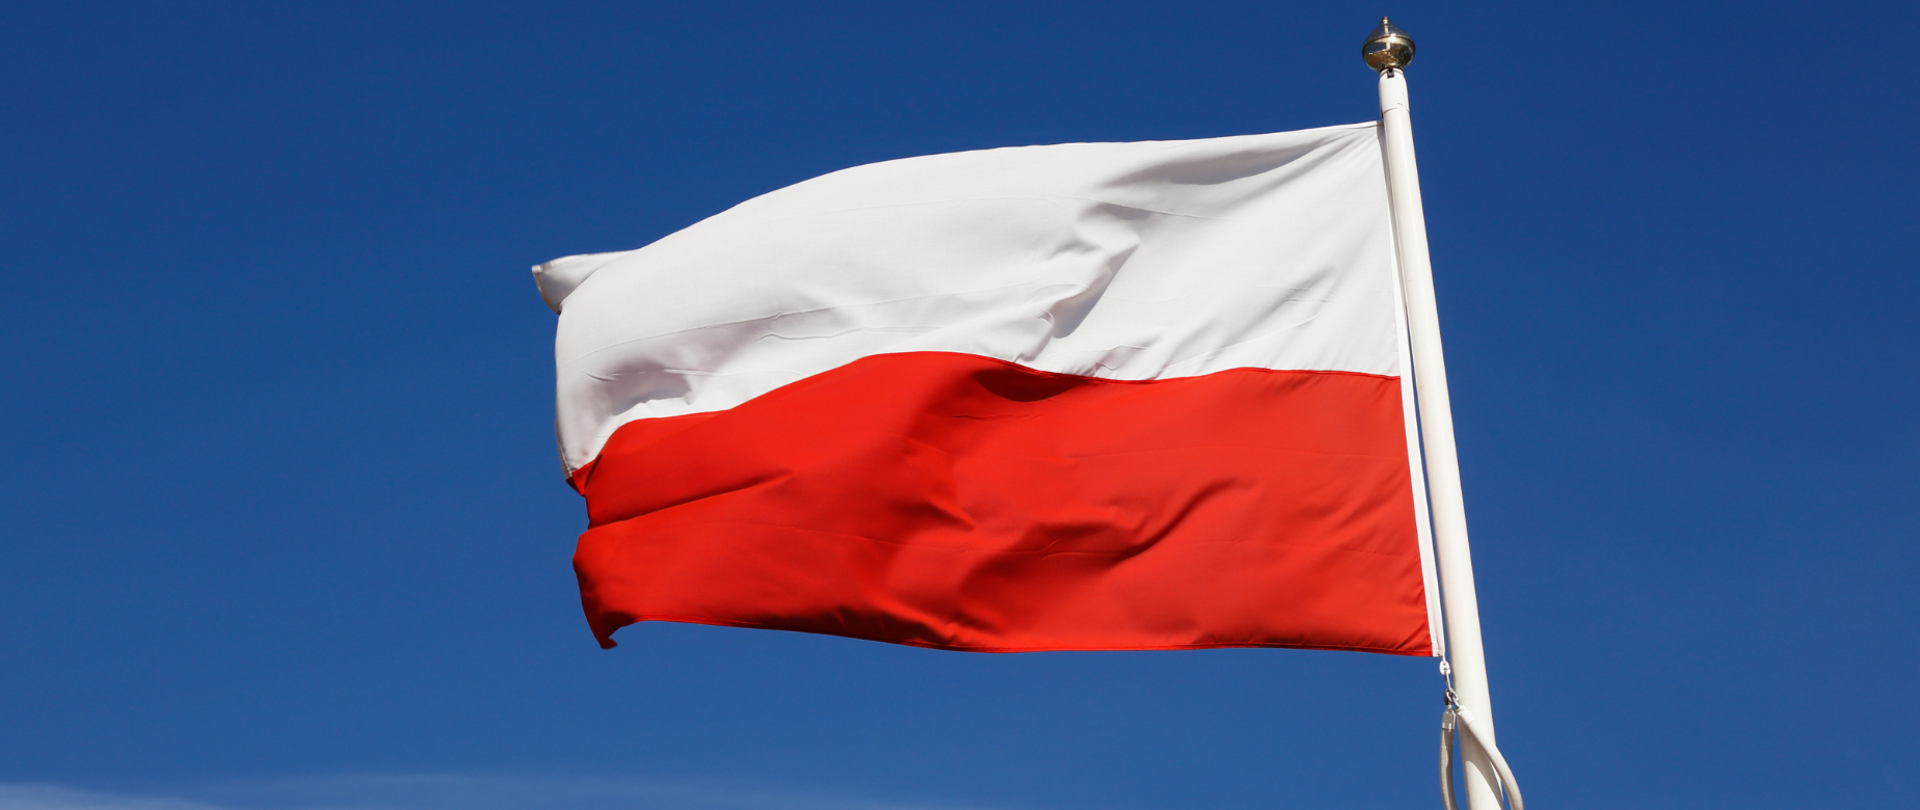 Na zdjęciu znajduje się flaga Polski